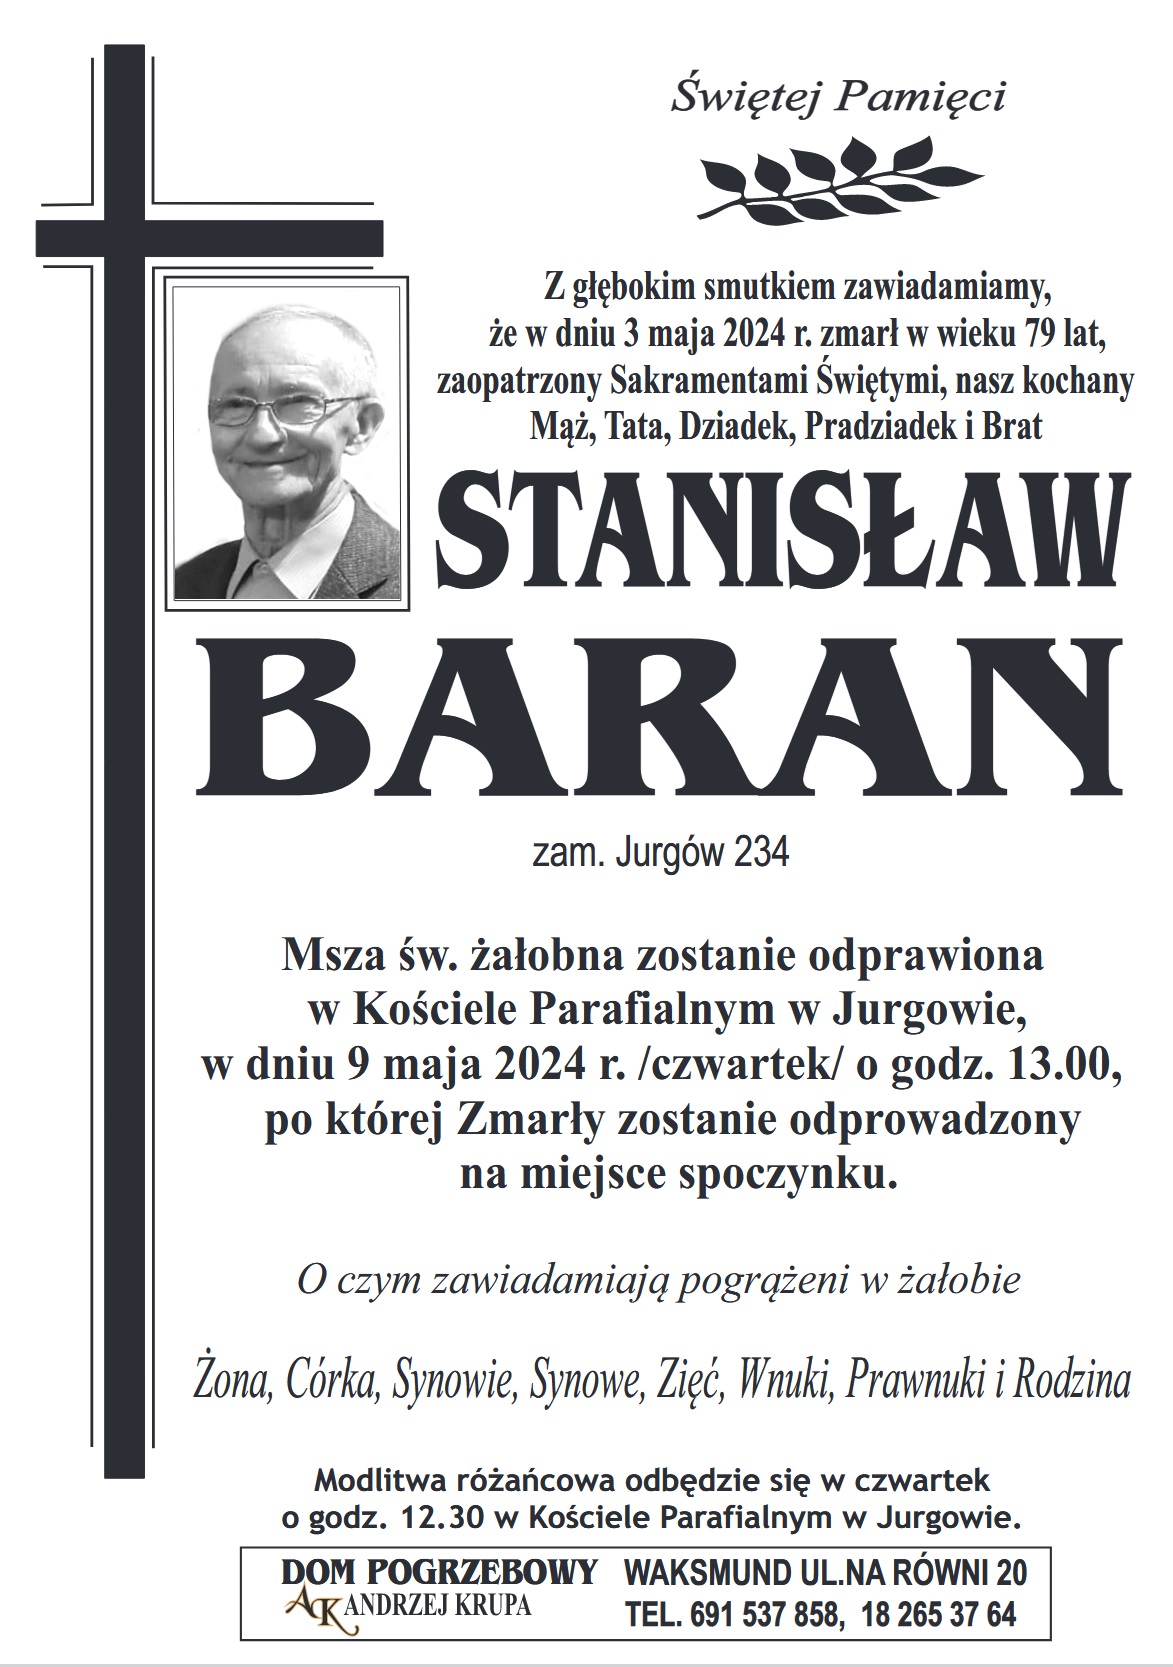 Stanisław Baran